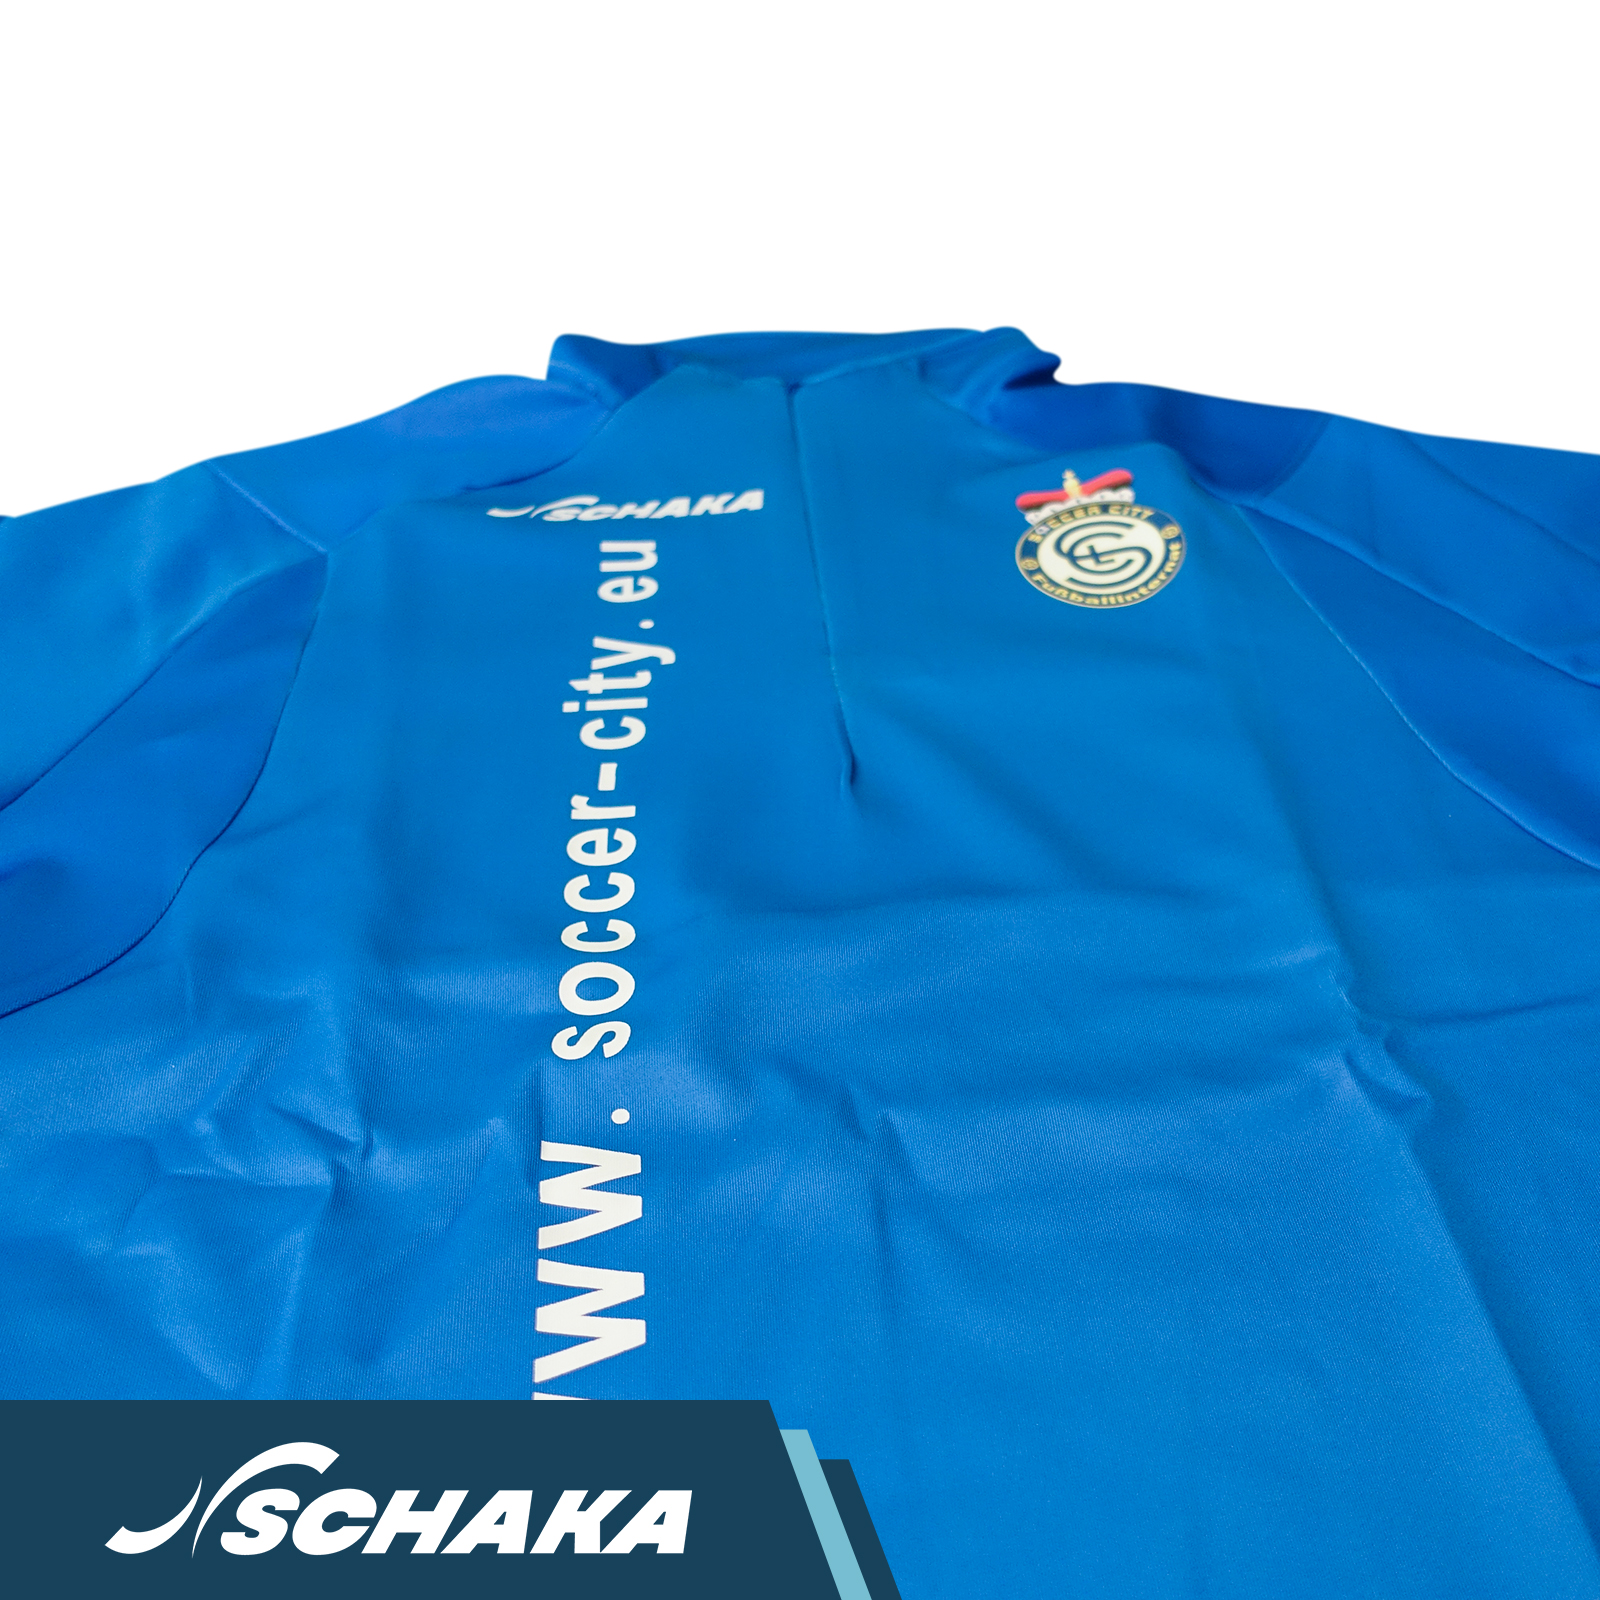 Schaka Zip Top MUA Soccer City Edition